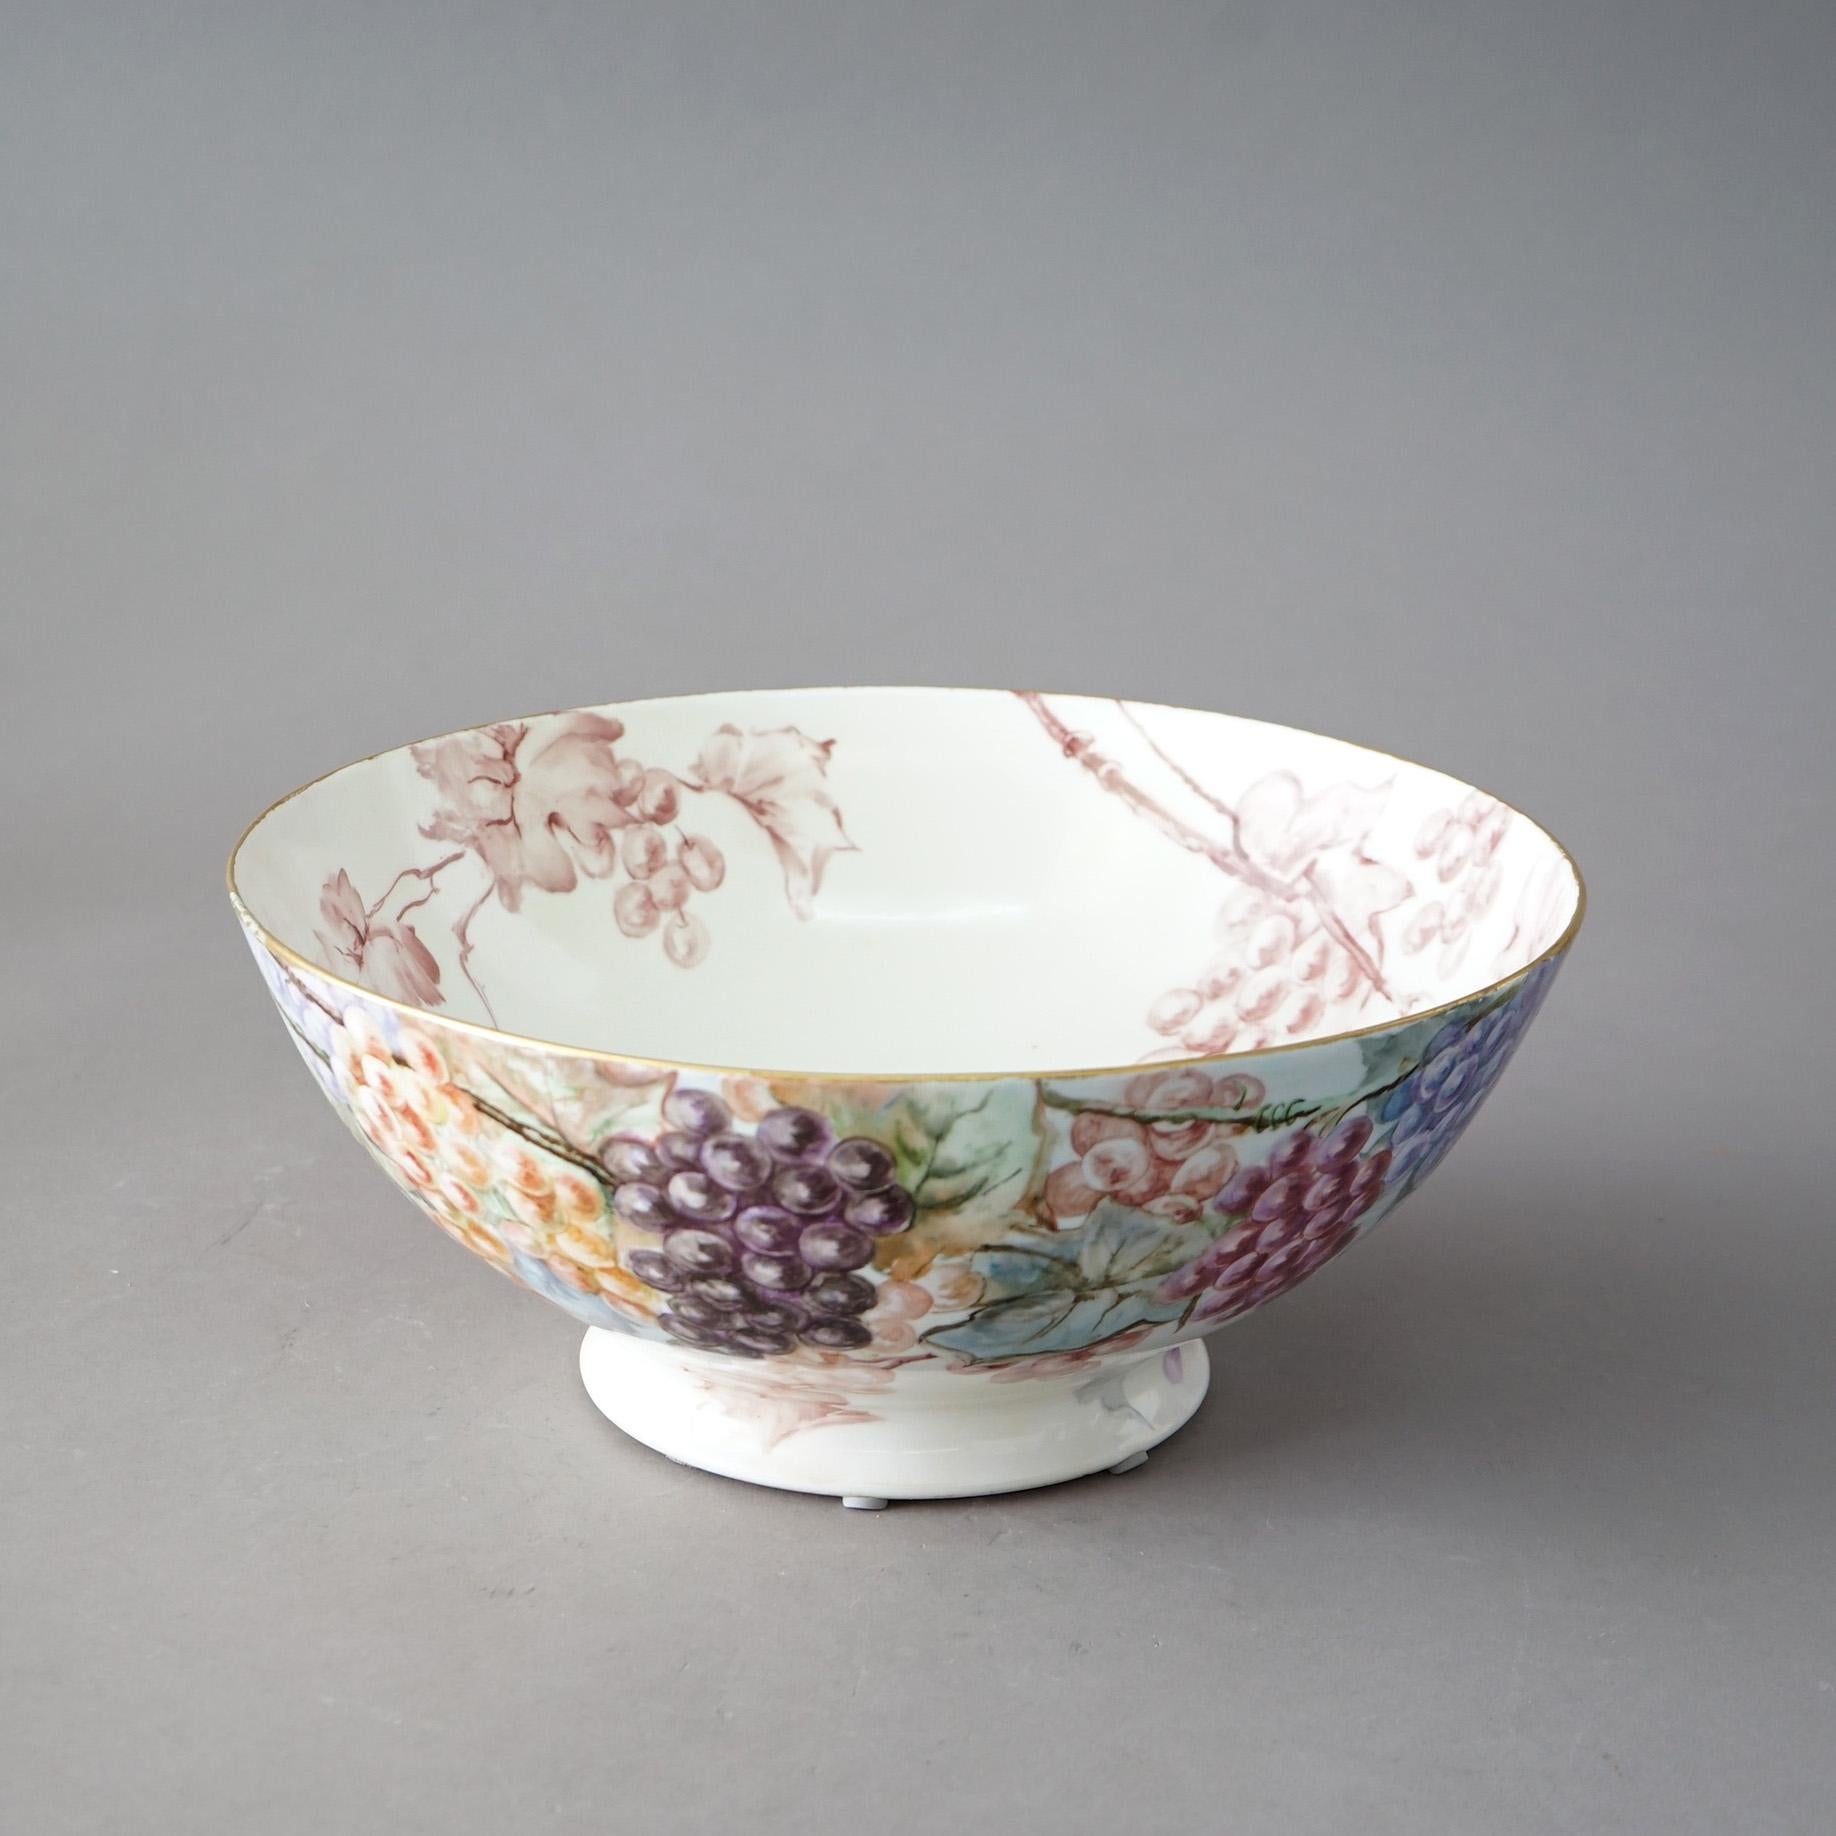 Un ancien bol de centre en porcelaine de Limoges avec des motifs floraux, de raisin et de toile d'araignée peints à la main, vers 1900.

Mesures - 6.25 